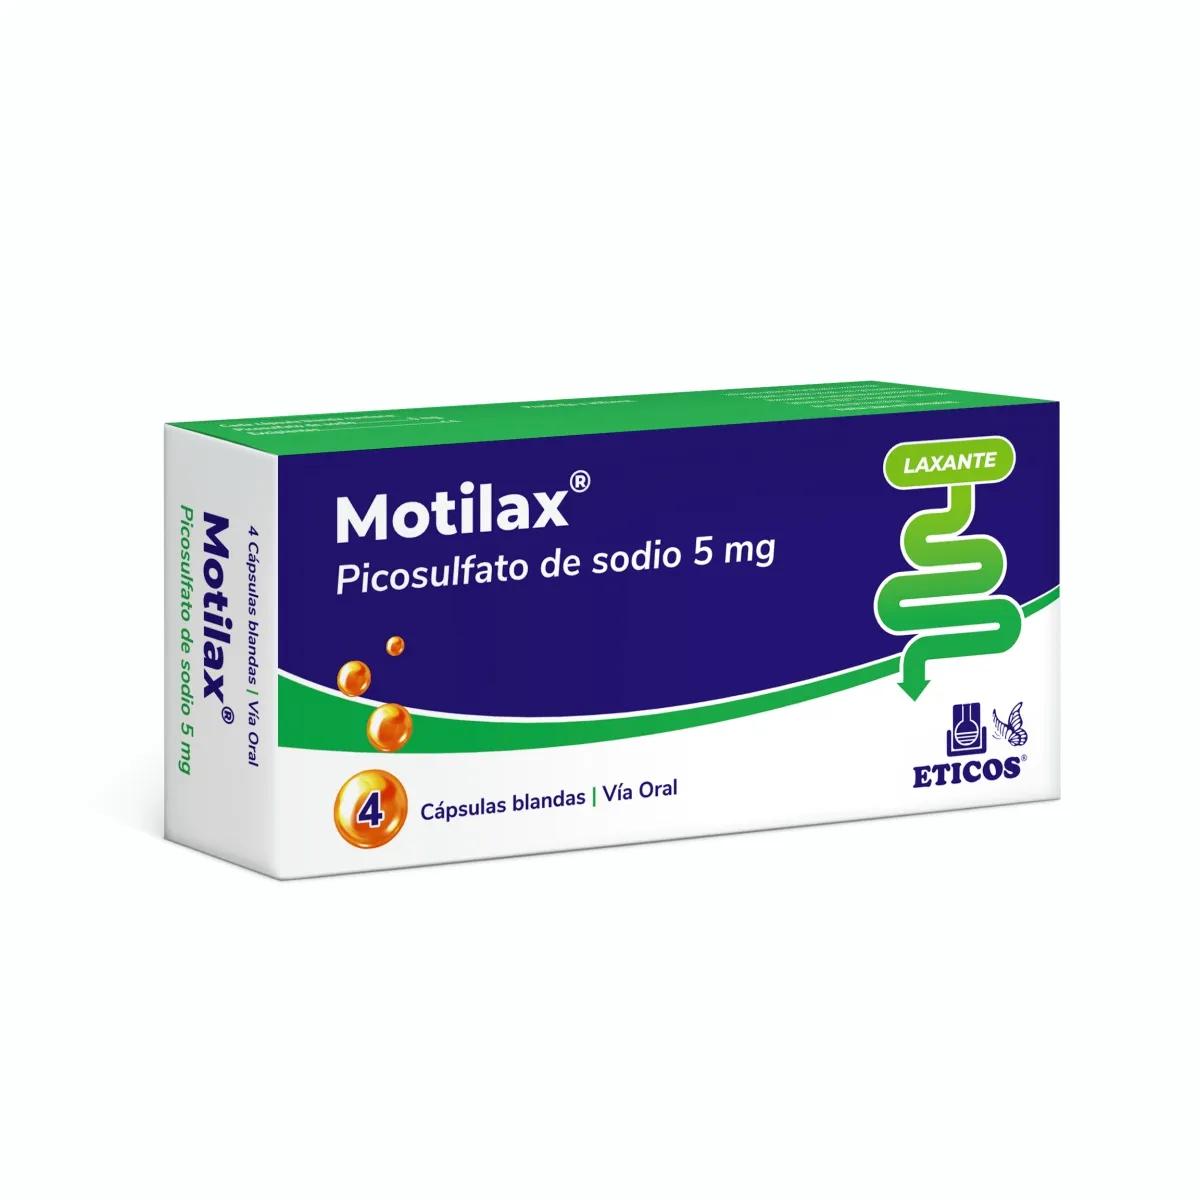 Motilax Picosulfato de Sodio 5 mg - Cont. 4 Capsulas Blandas